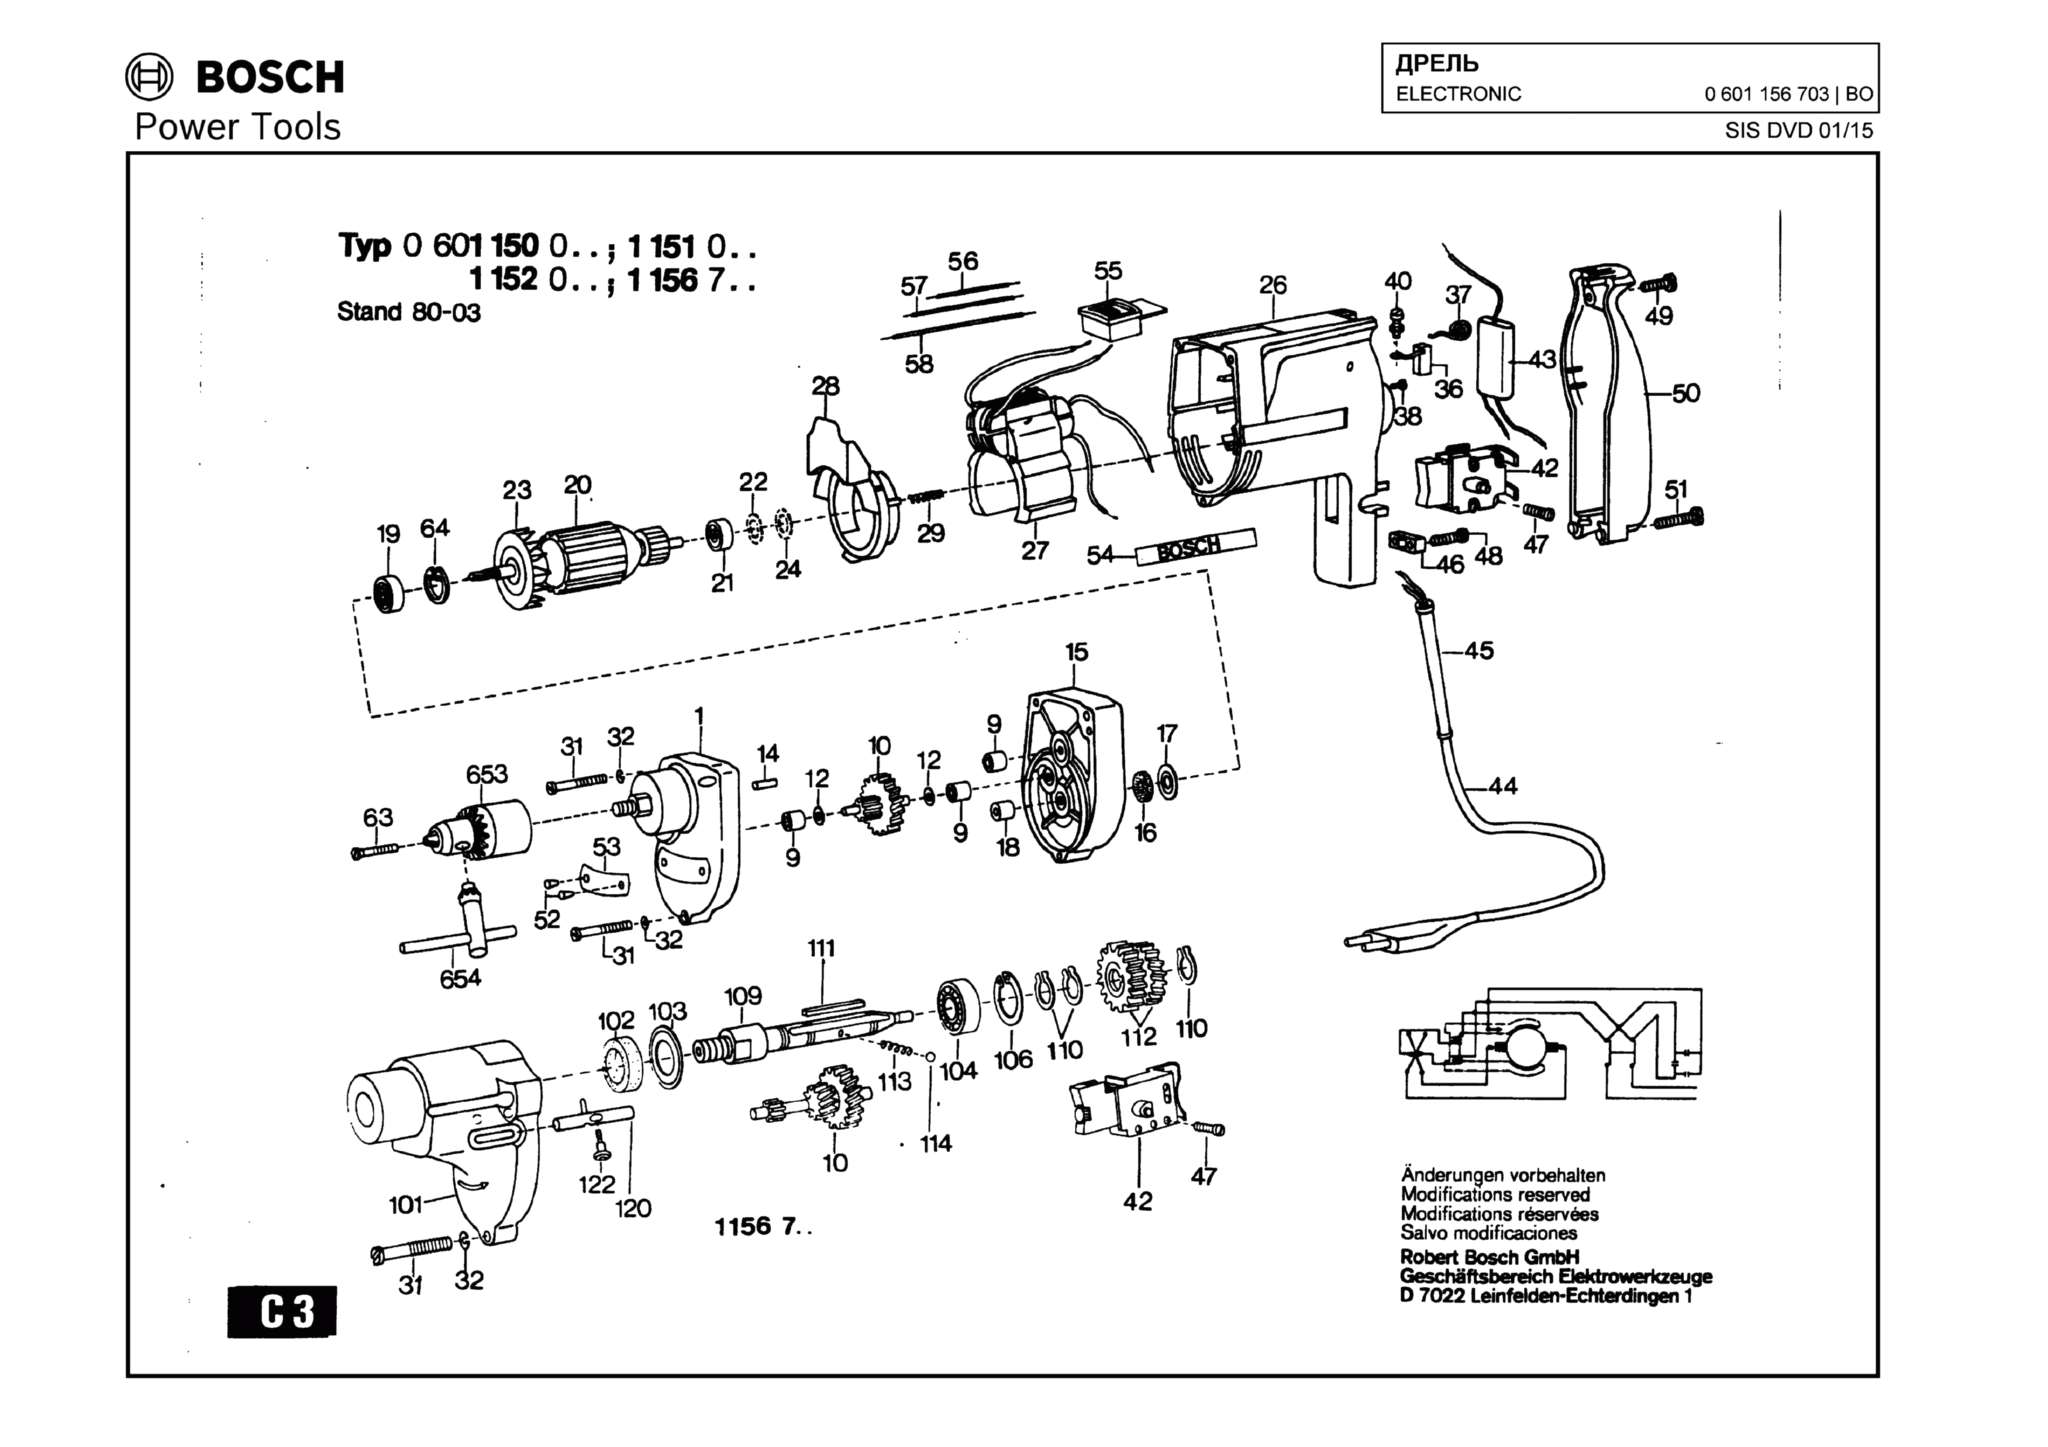 Запчасти, схема и деталировка Bosch ELECTRONIC (ТИП 0601156703)